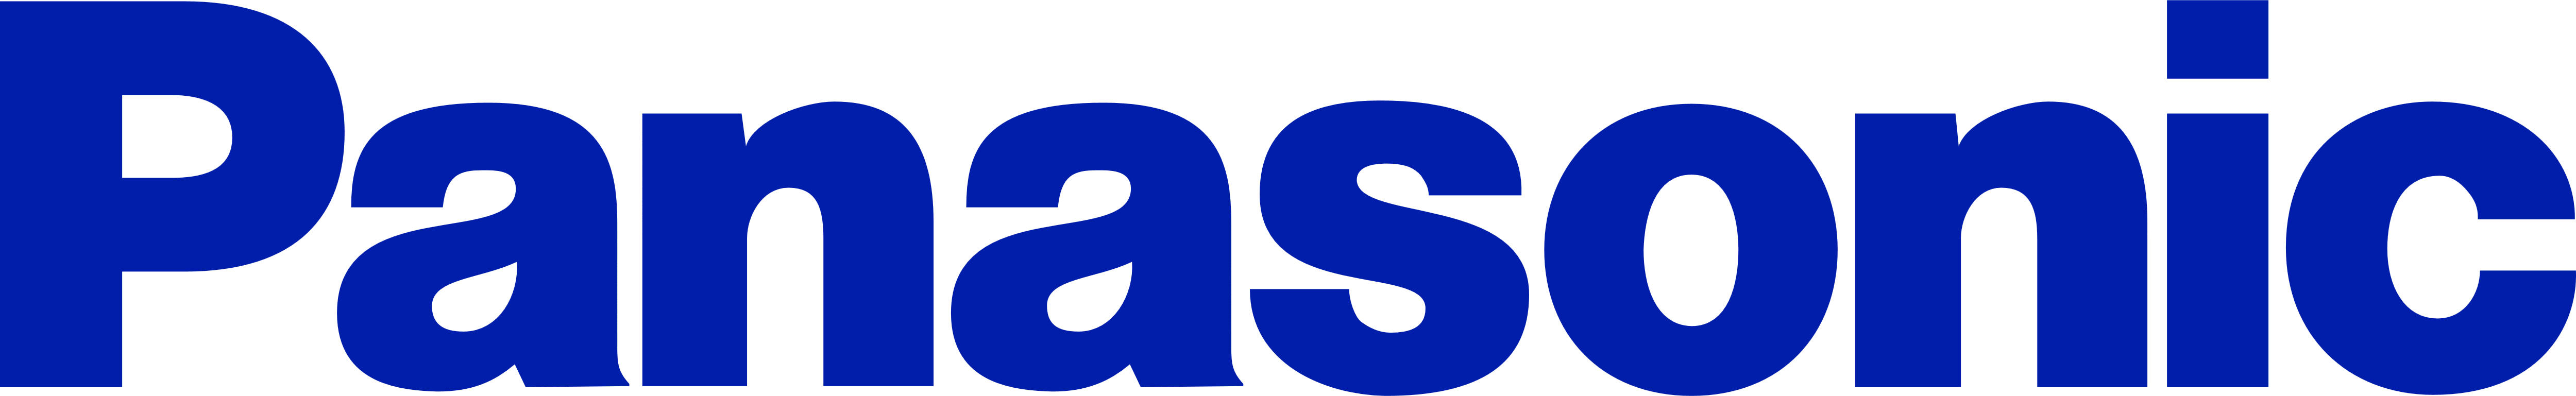 Panasonic Logo - Panasonic – Logos Download